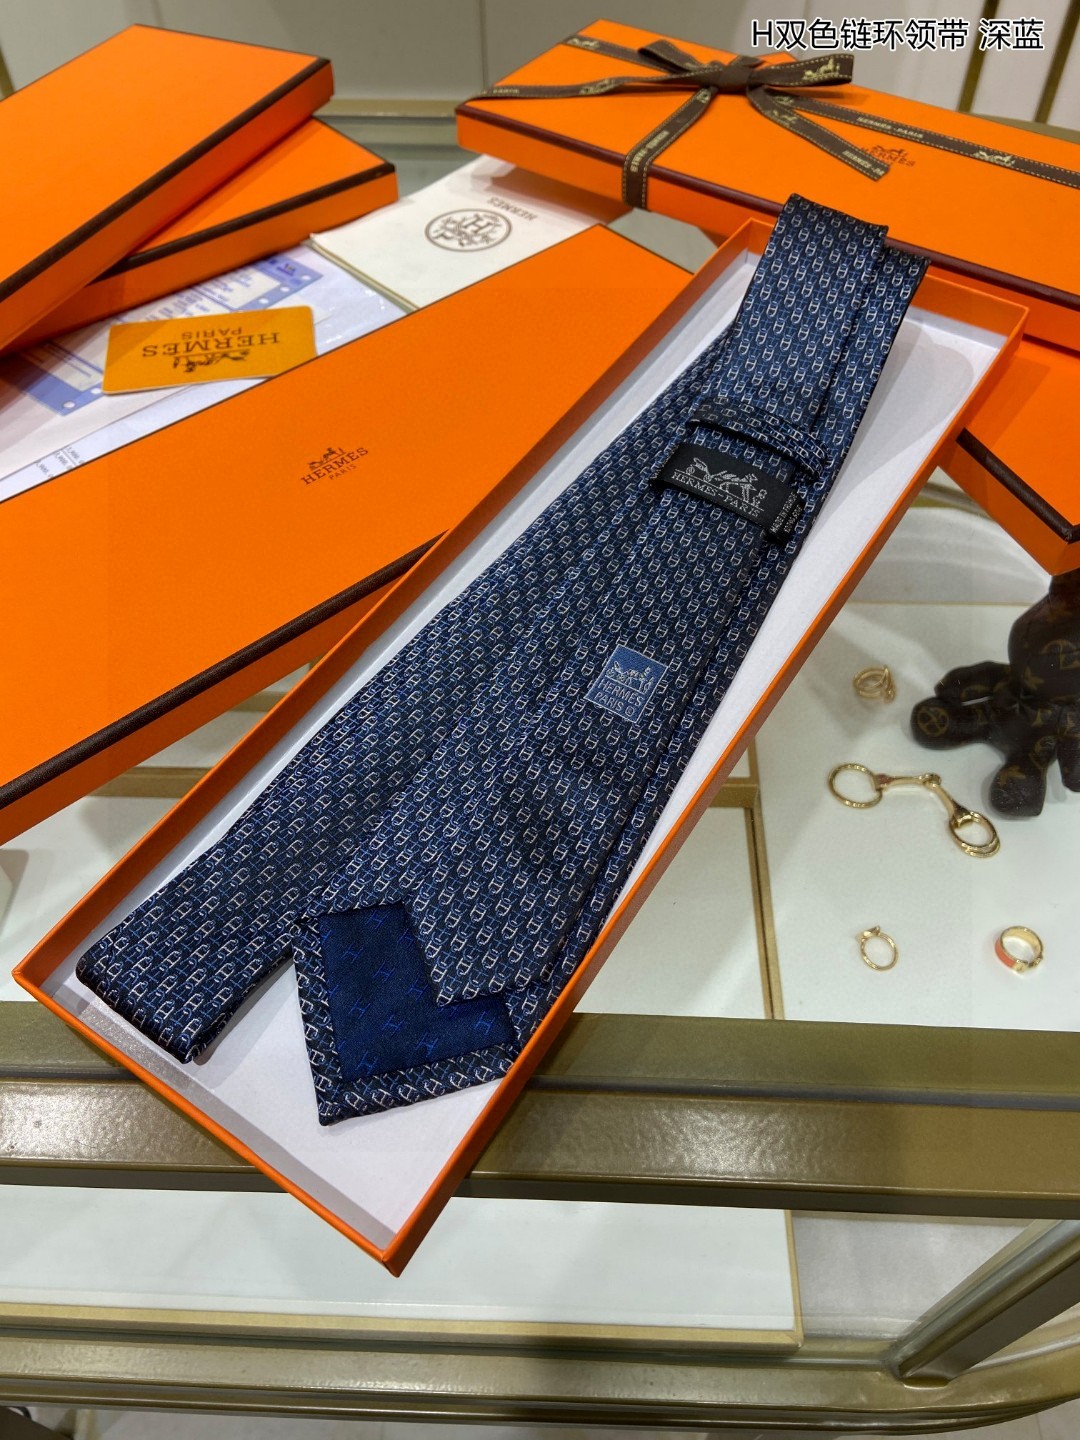 男士新款领带系列H双色链环领带稀有H家每年都有一千条不同印花的领带面世从最初的多以几何图案表现骑术活动为